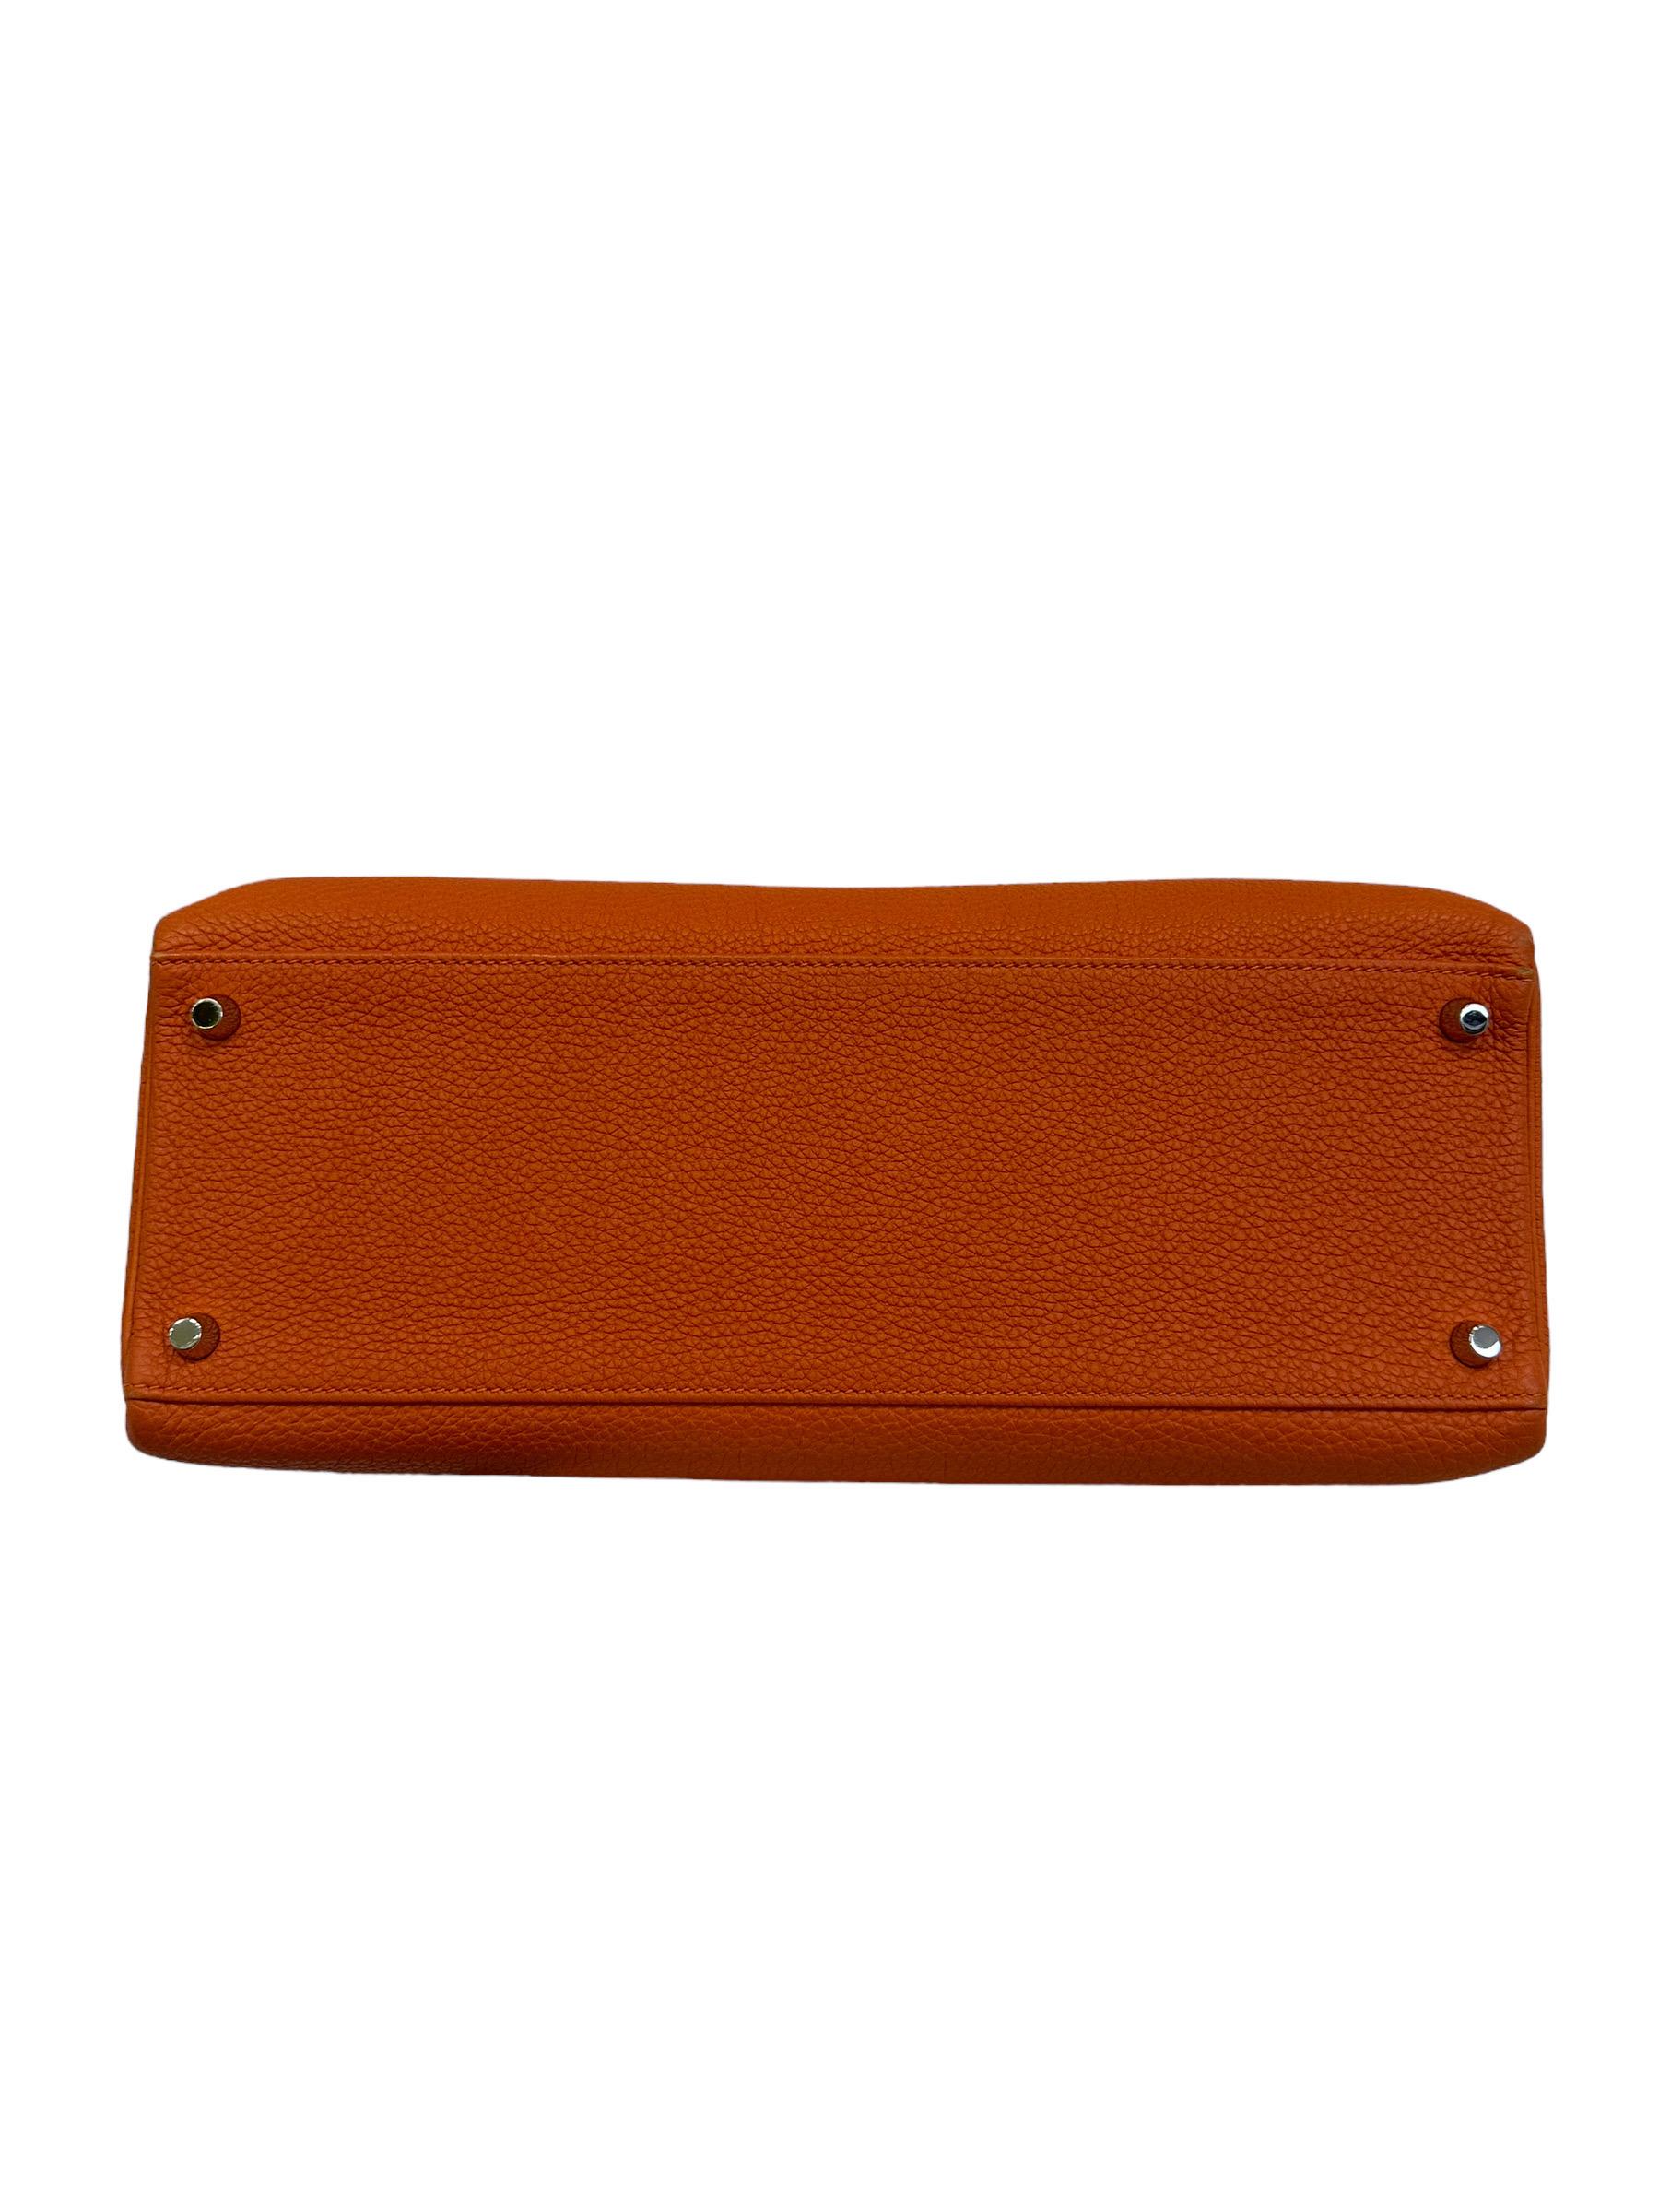 2011 Hermès Kelly 35 Fjord Leather Orange Top Handle Bag  6